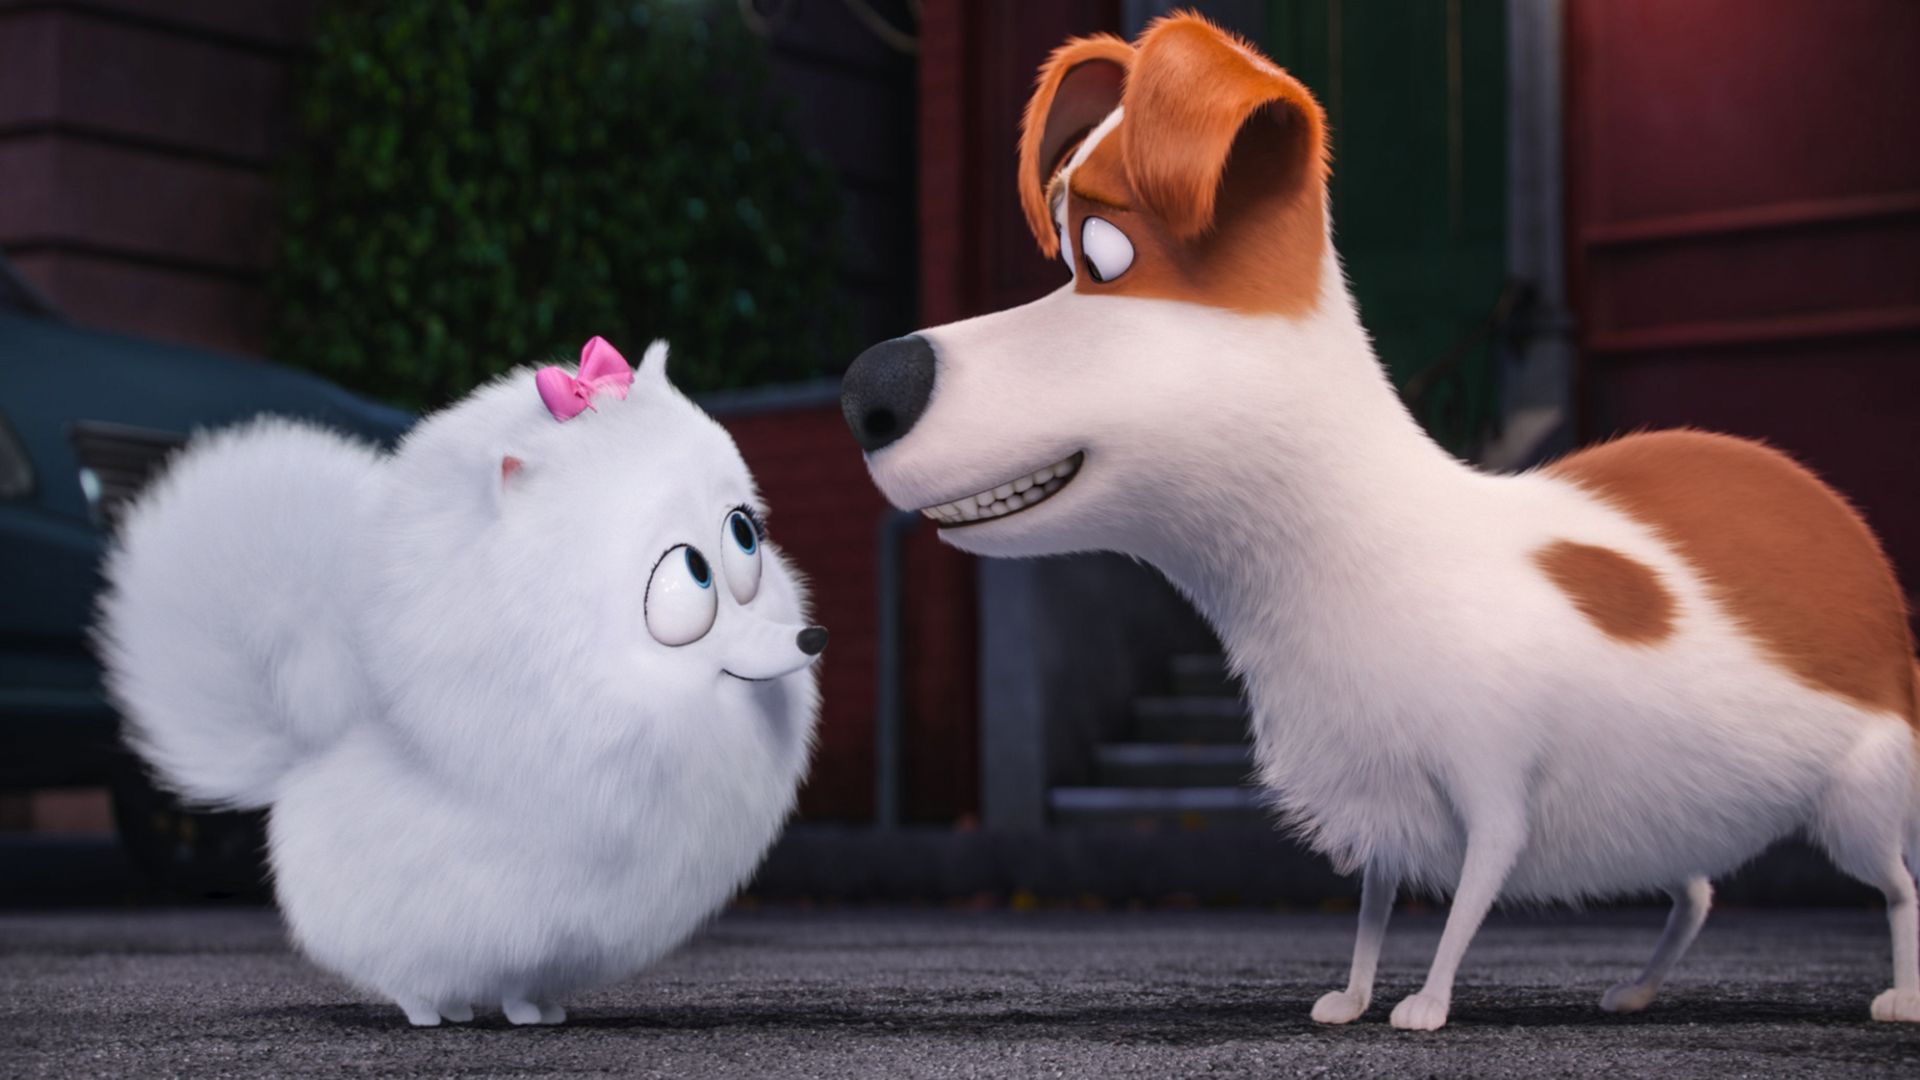 Тайная жизнь домашних животных, собака, пес, Лучшие мультфильмы 2016, The Secret Life of Pets, dog, Best Animation Movies of 2016, cartoon (horizontal)